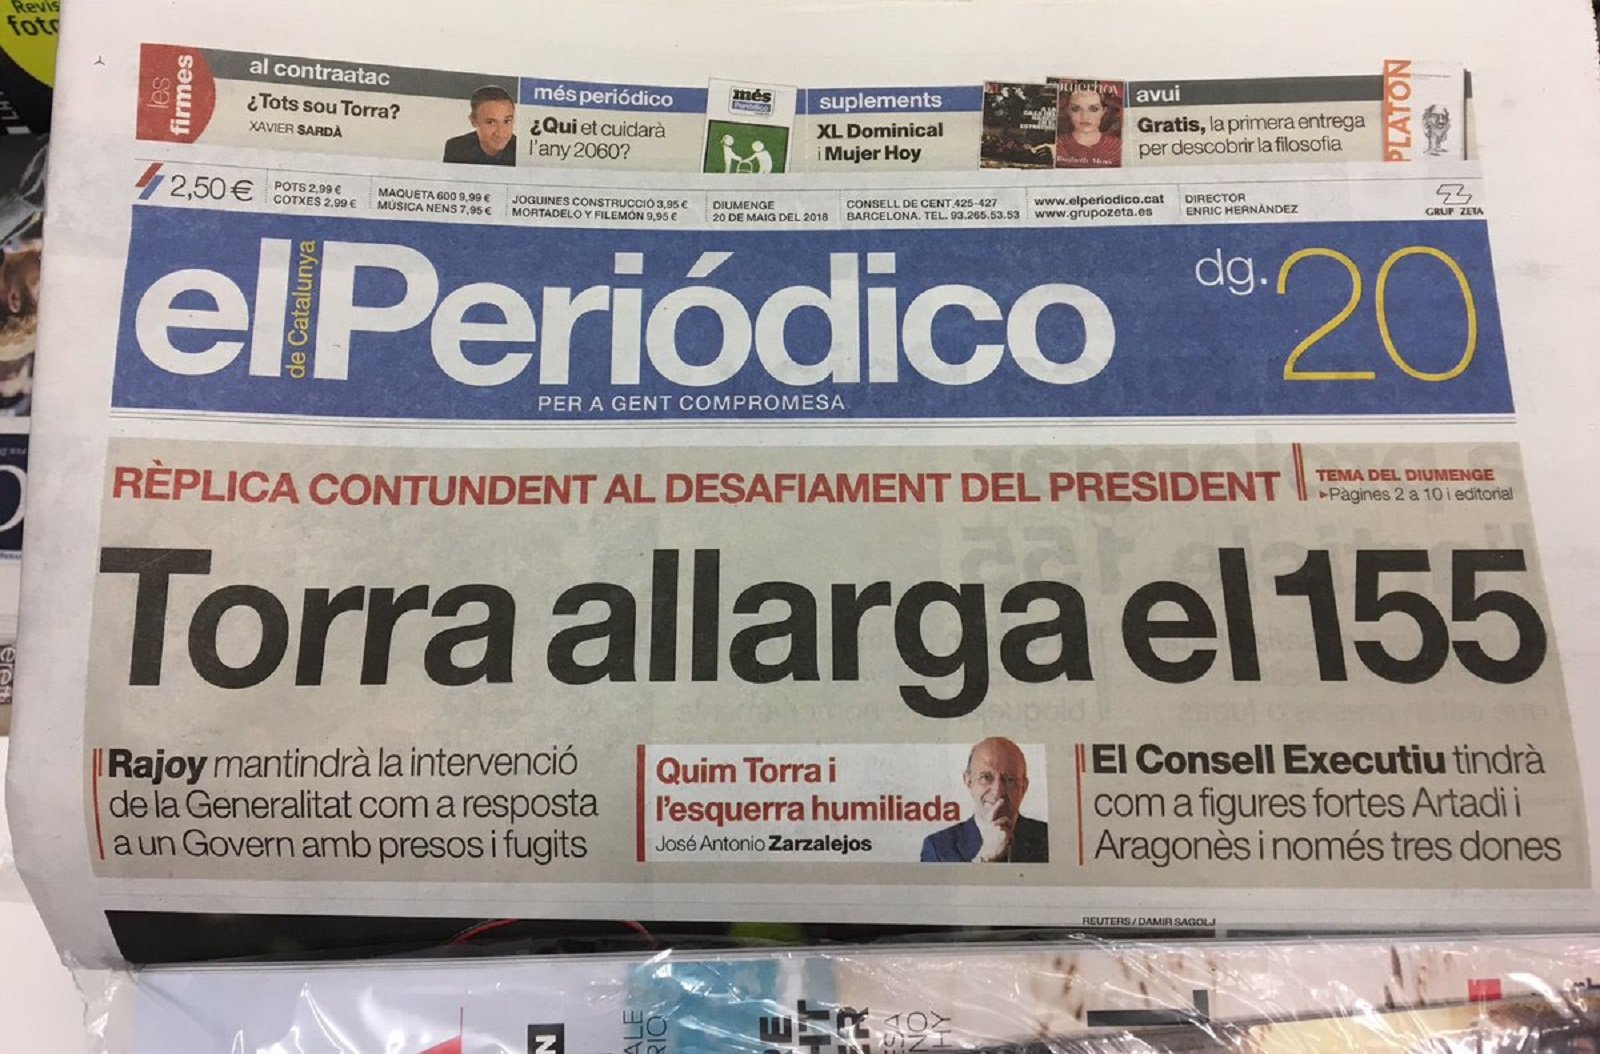 Avalancha de críticas a 'El Periódico' después de decir que "Torra alarga el 155"